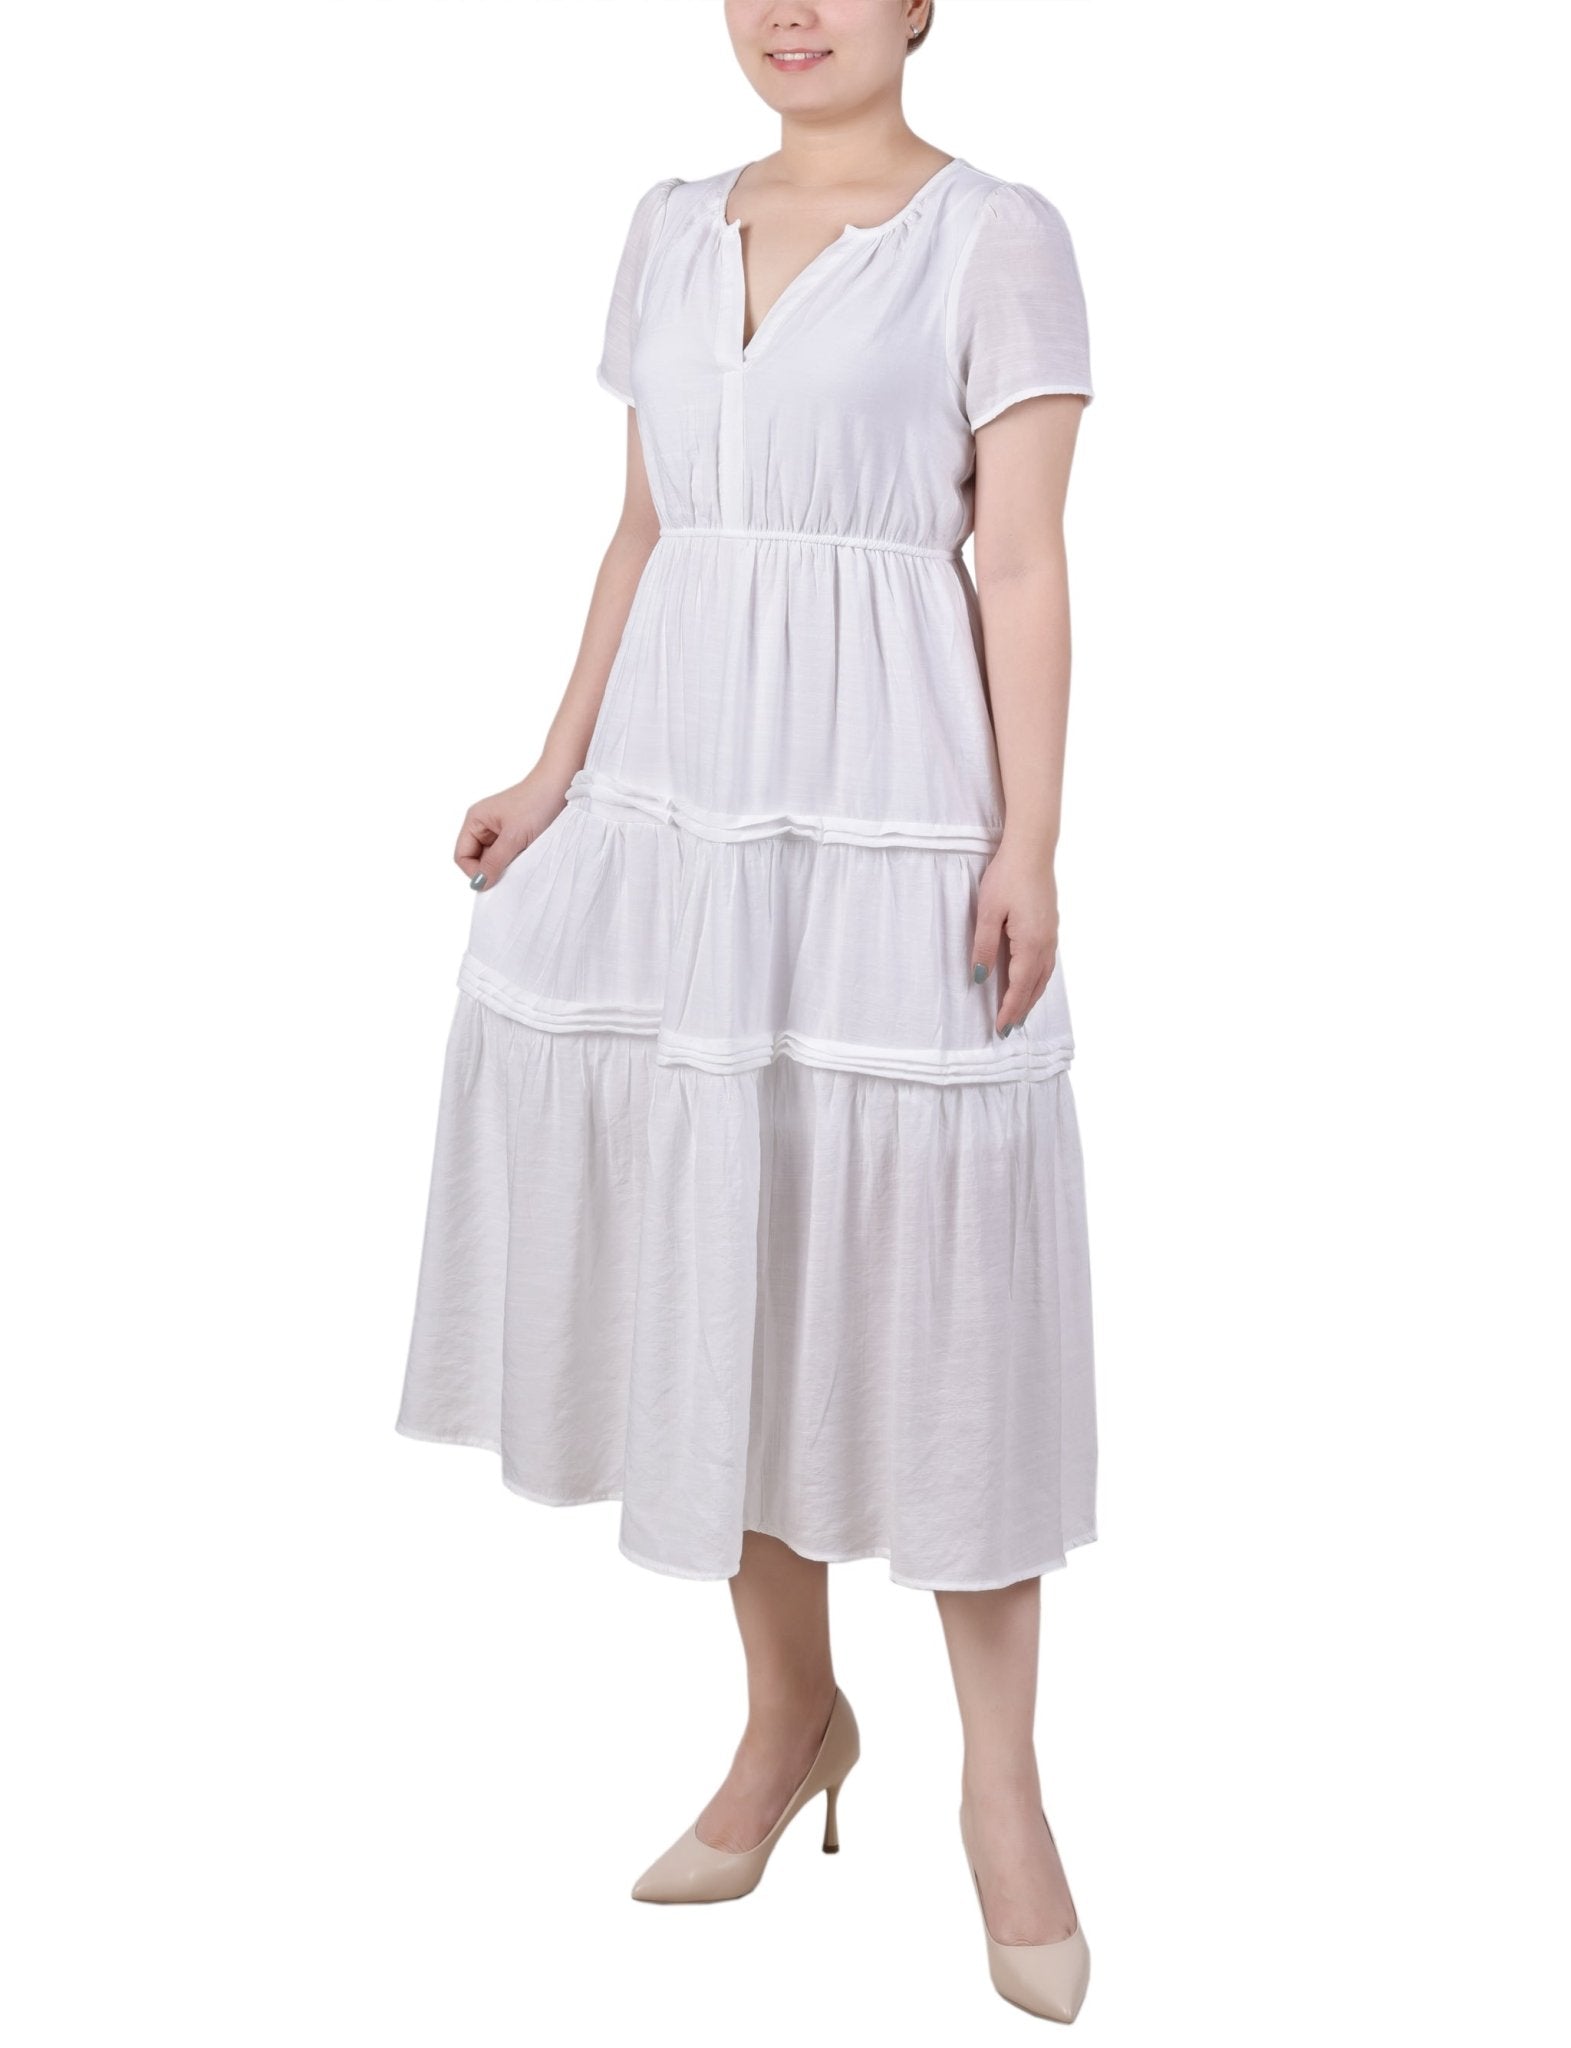 Ankle Length Short Sleeve Dress - Petite - DressbarnDresses